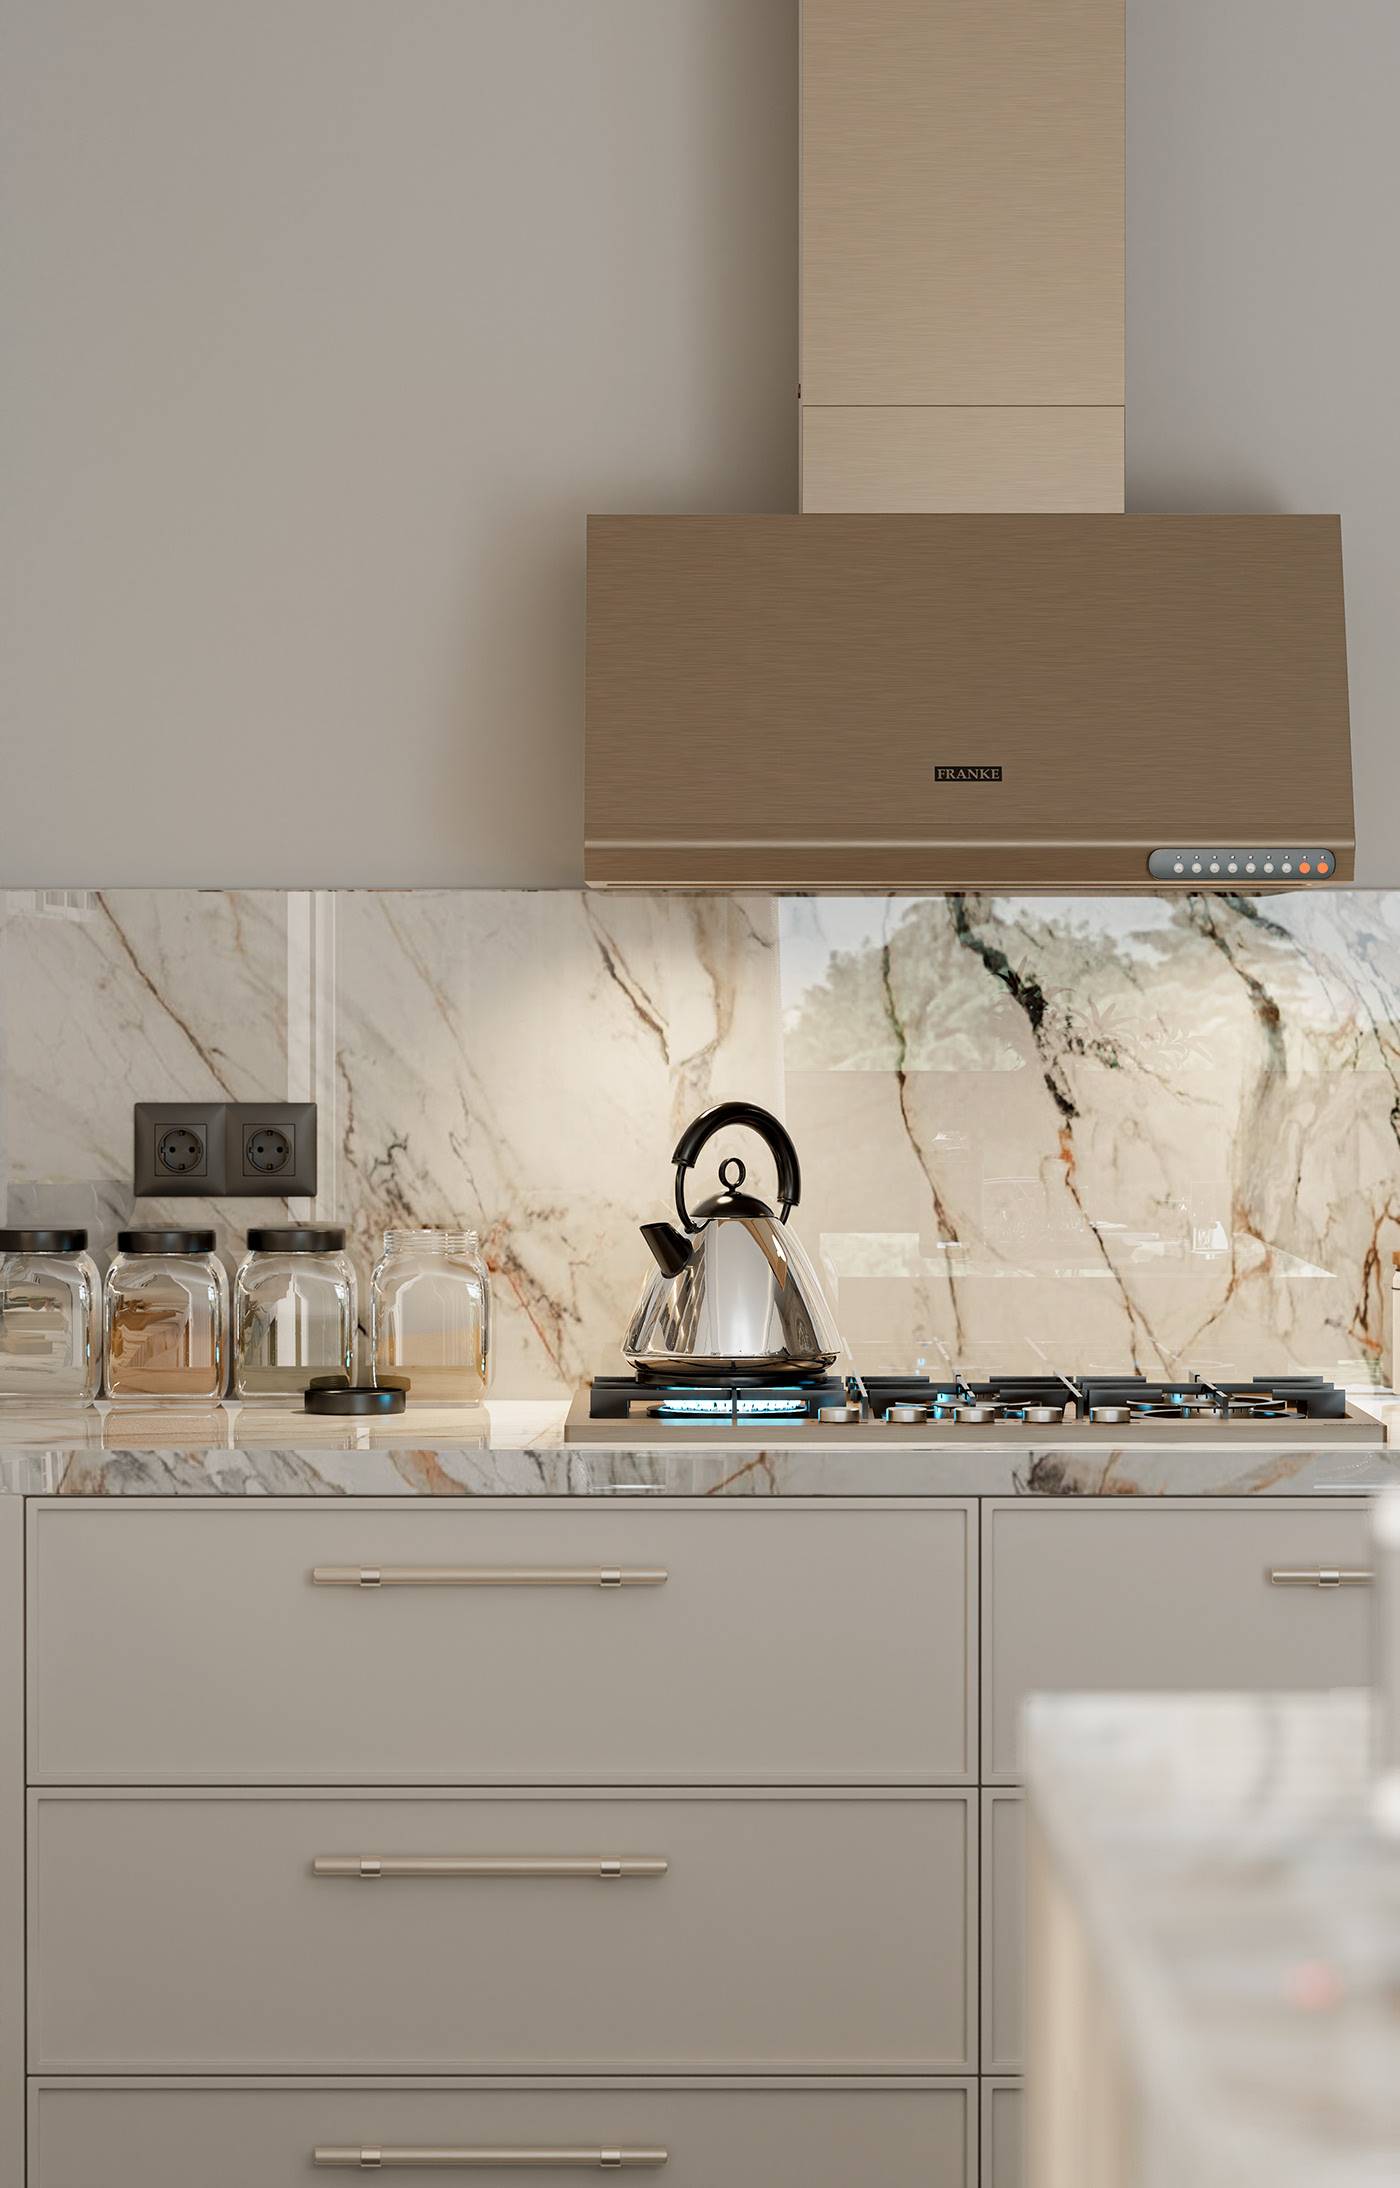 Modern kitchen design and render on Behance